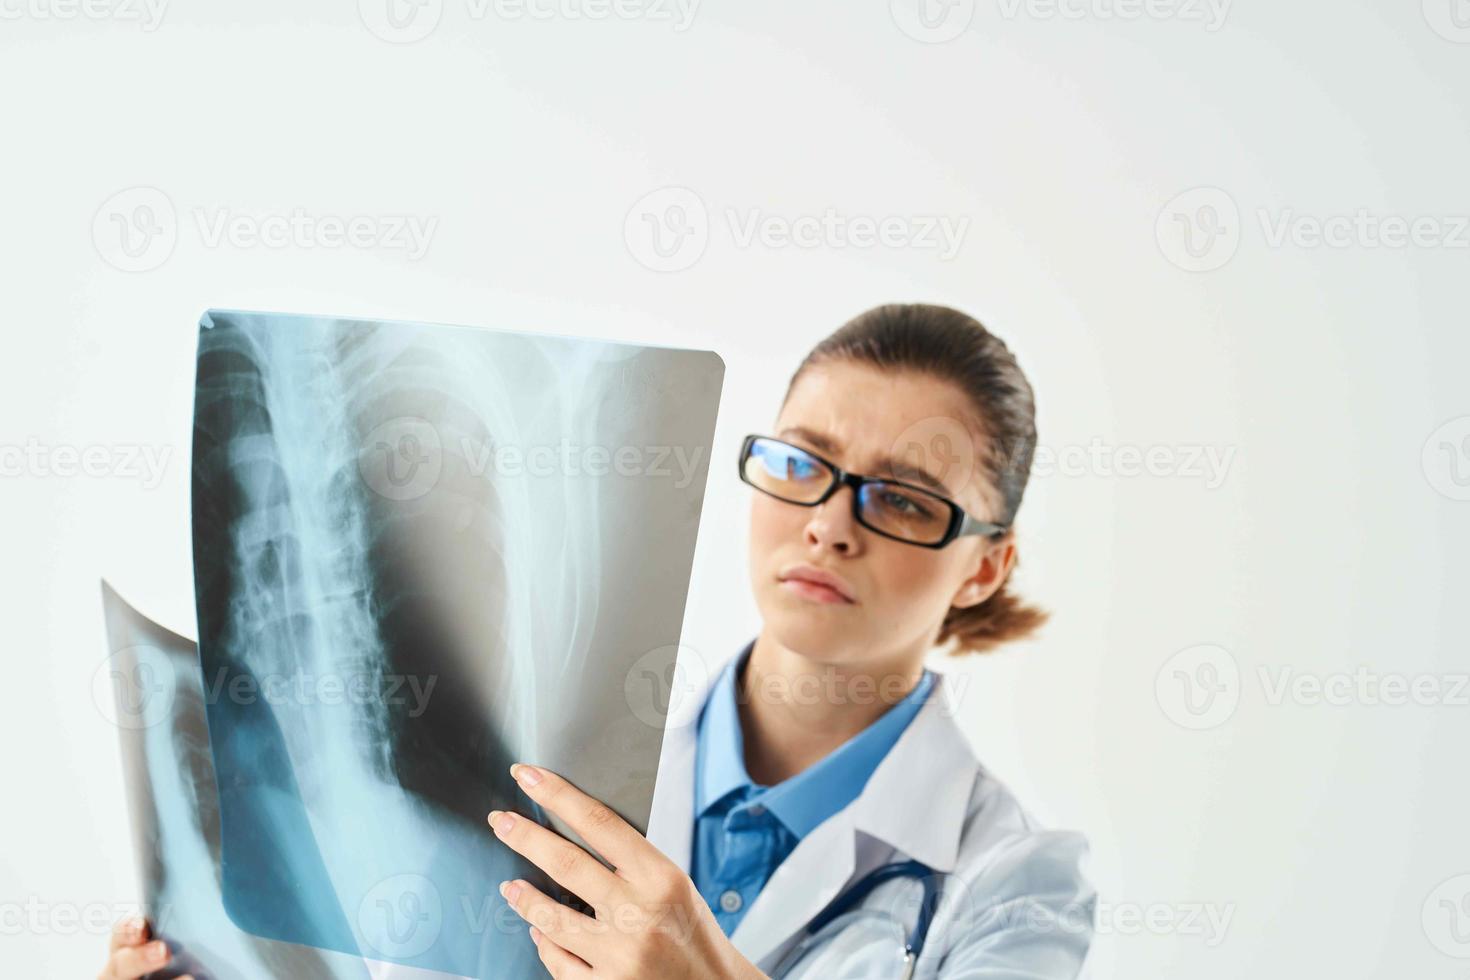 de radioloog looks Bij de röntgenstraal diagnose naar een professioneel de resultaten foto